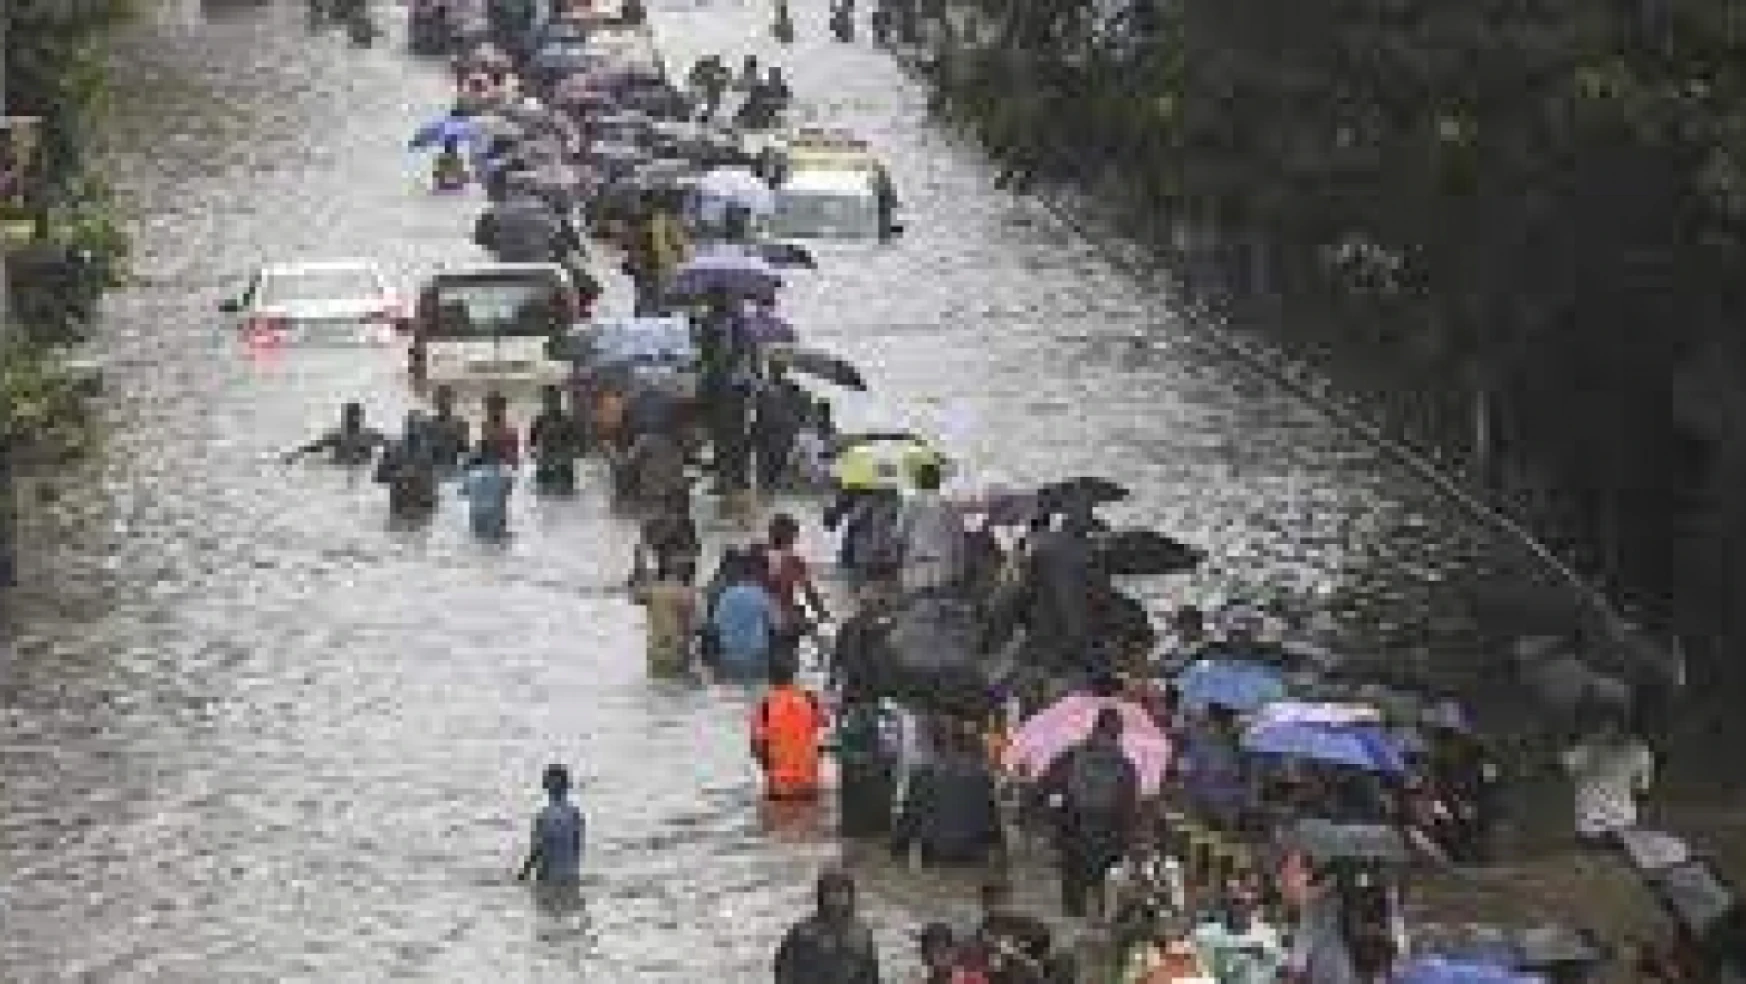 Hindistan'ın güneyinde sel felaketi: 31 ölü